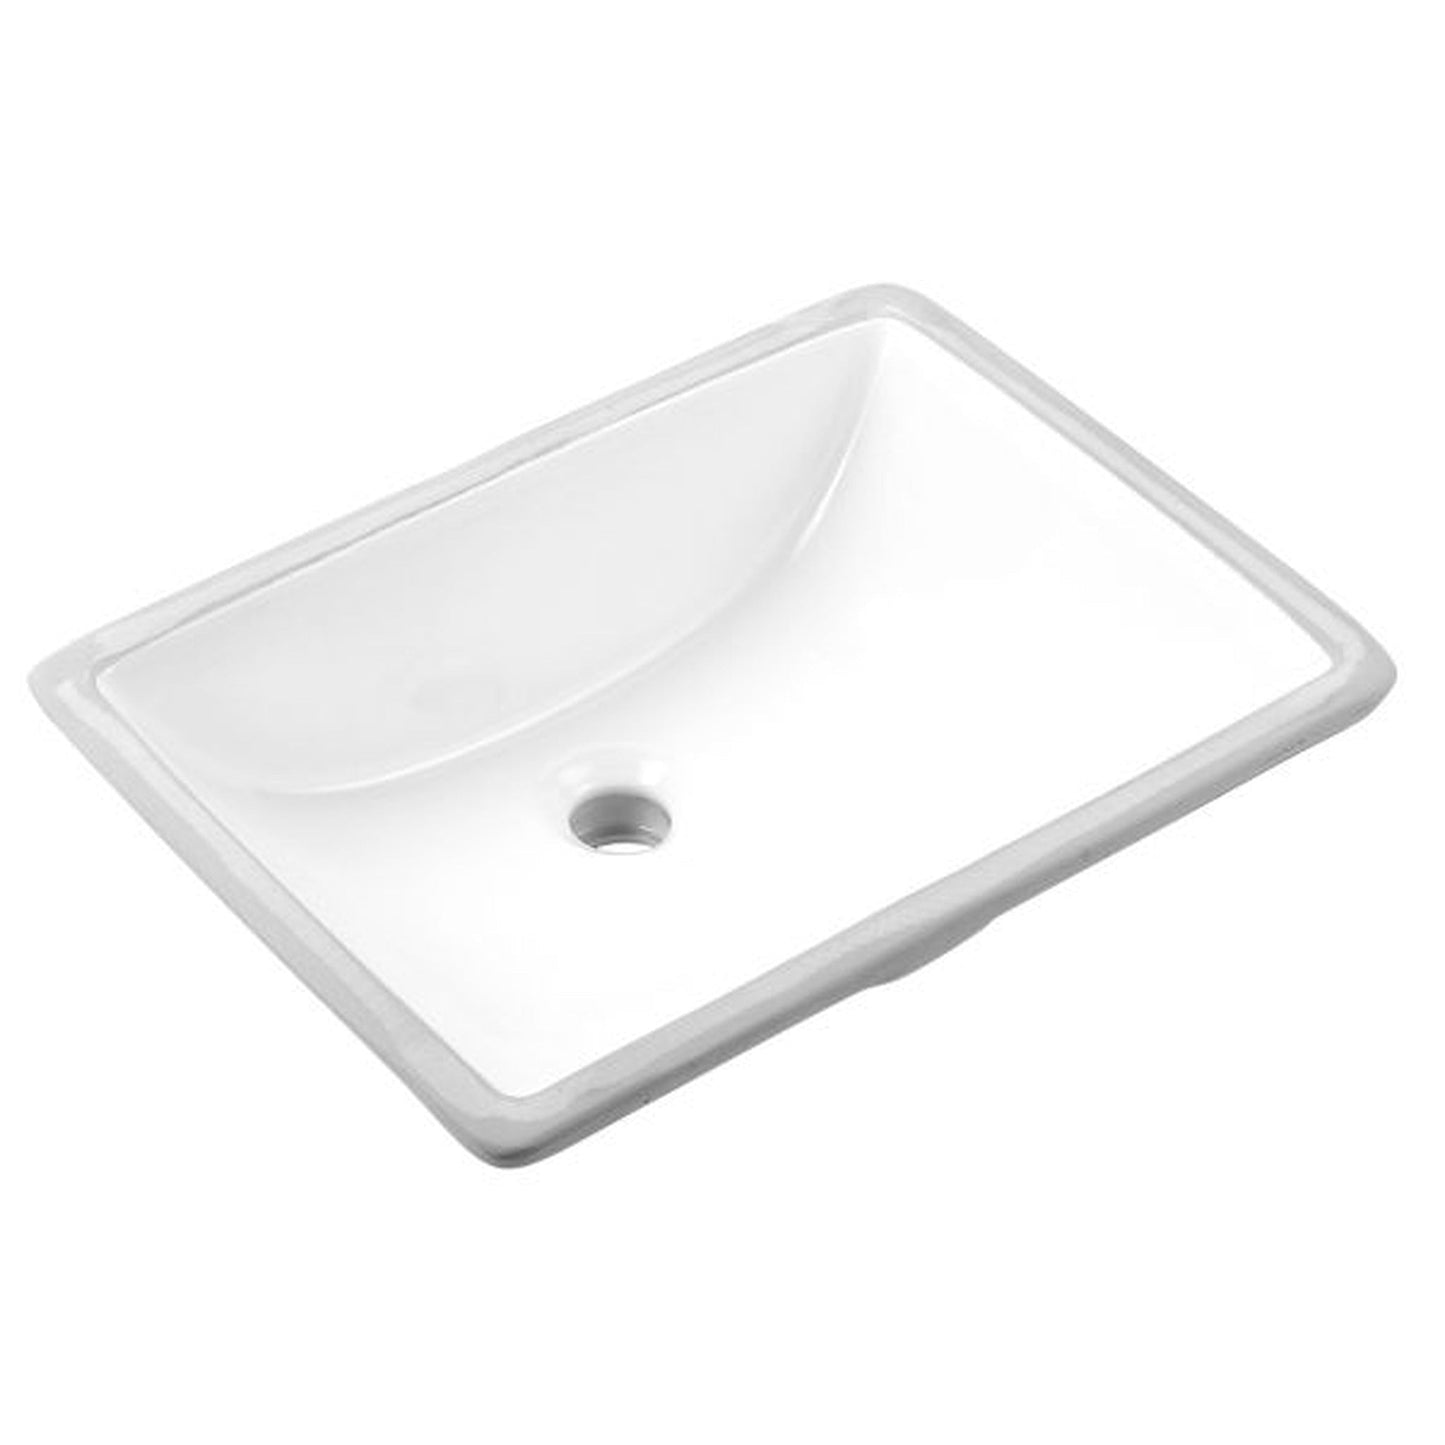 Ratel 62" x 23" White Quartz Vanity Top With Single Undermount Sink